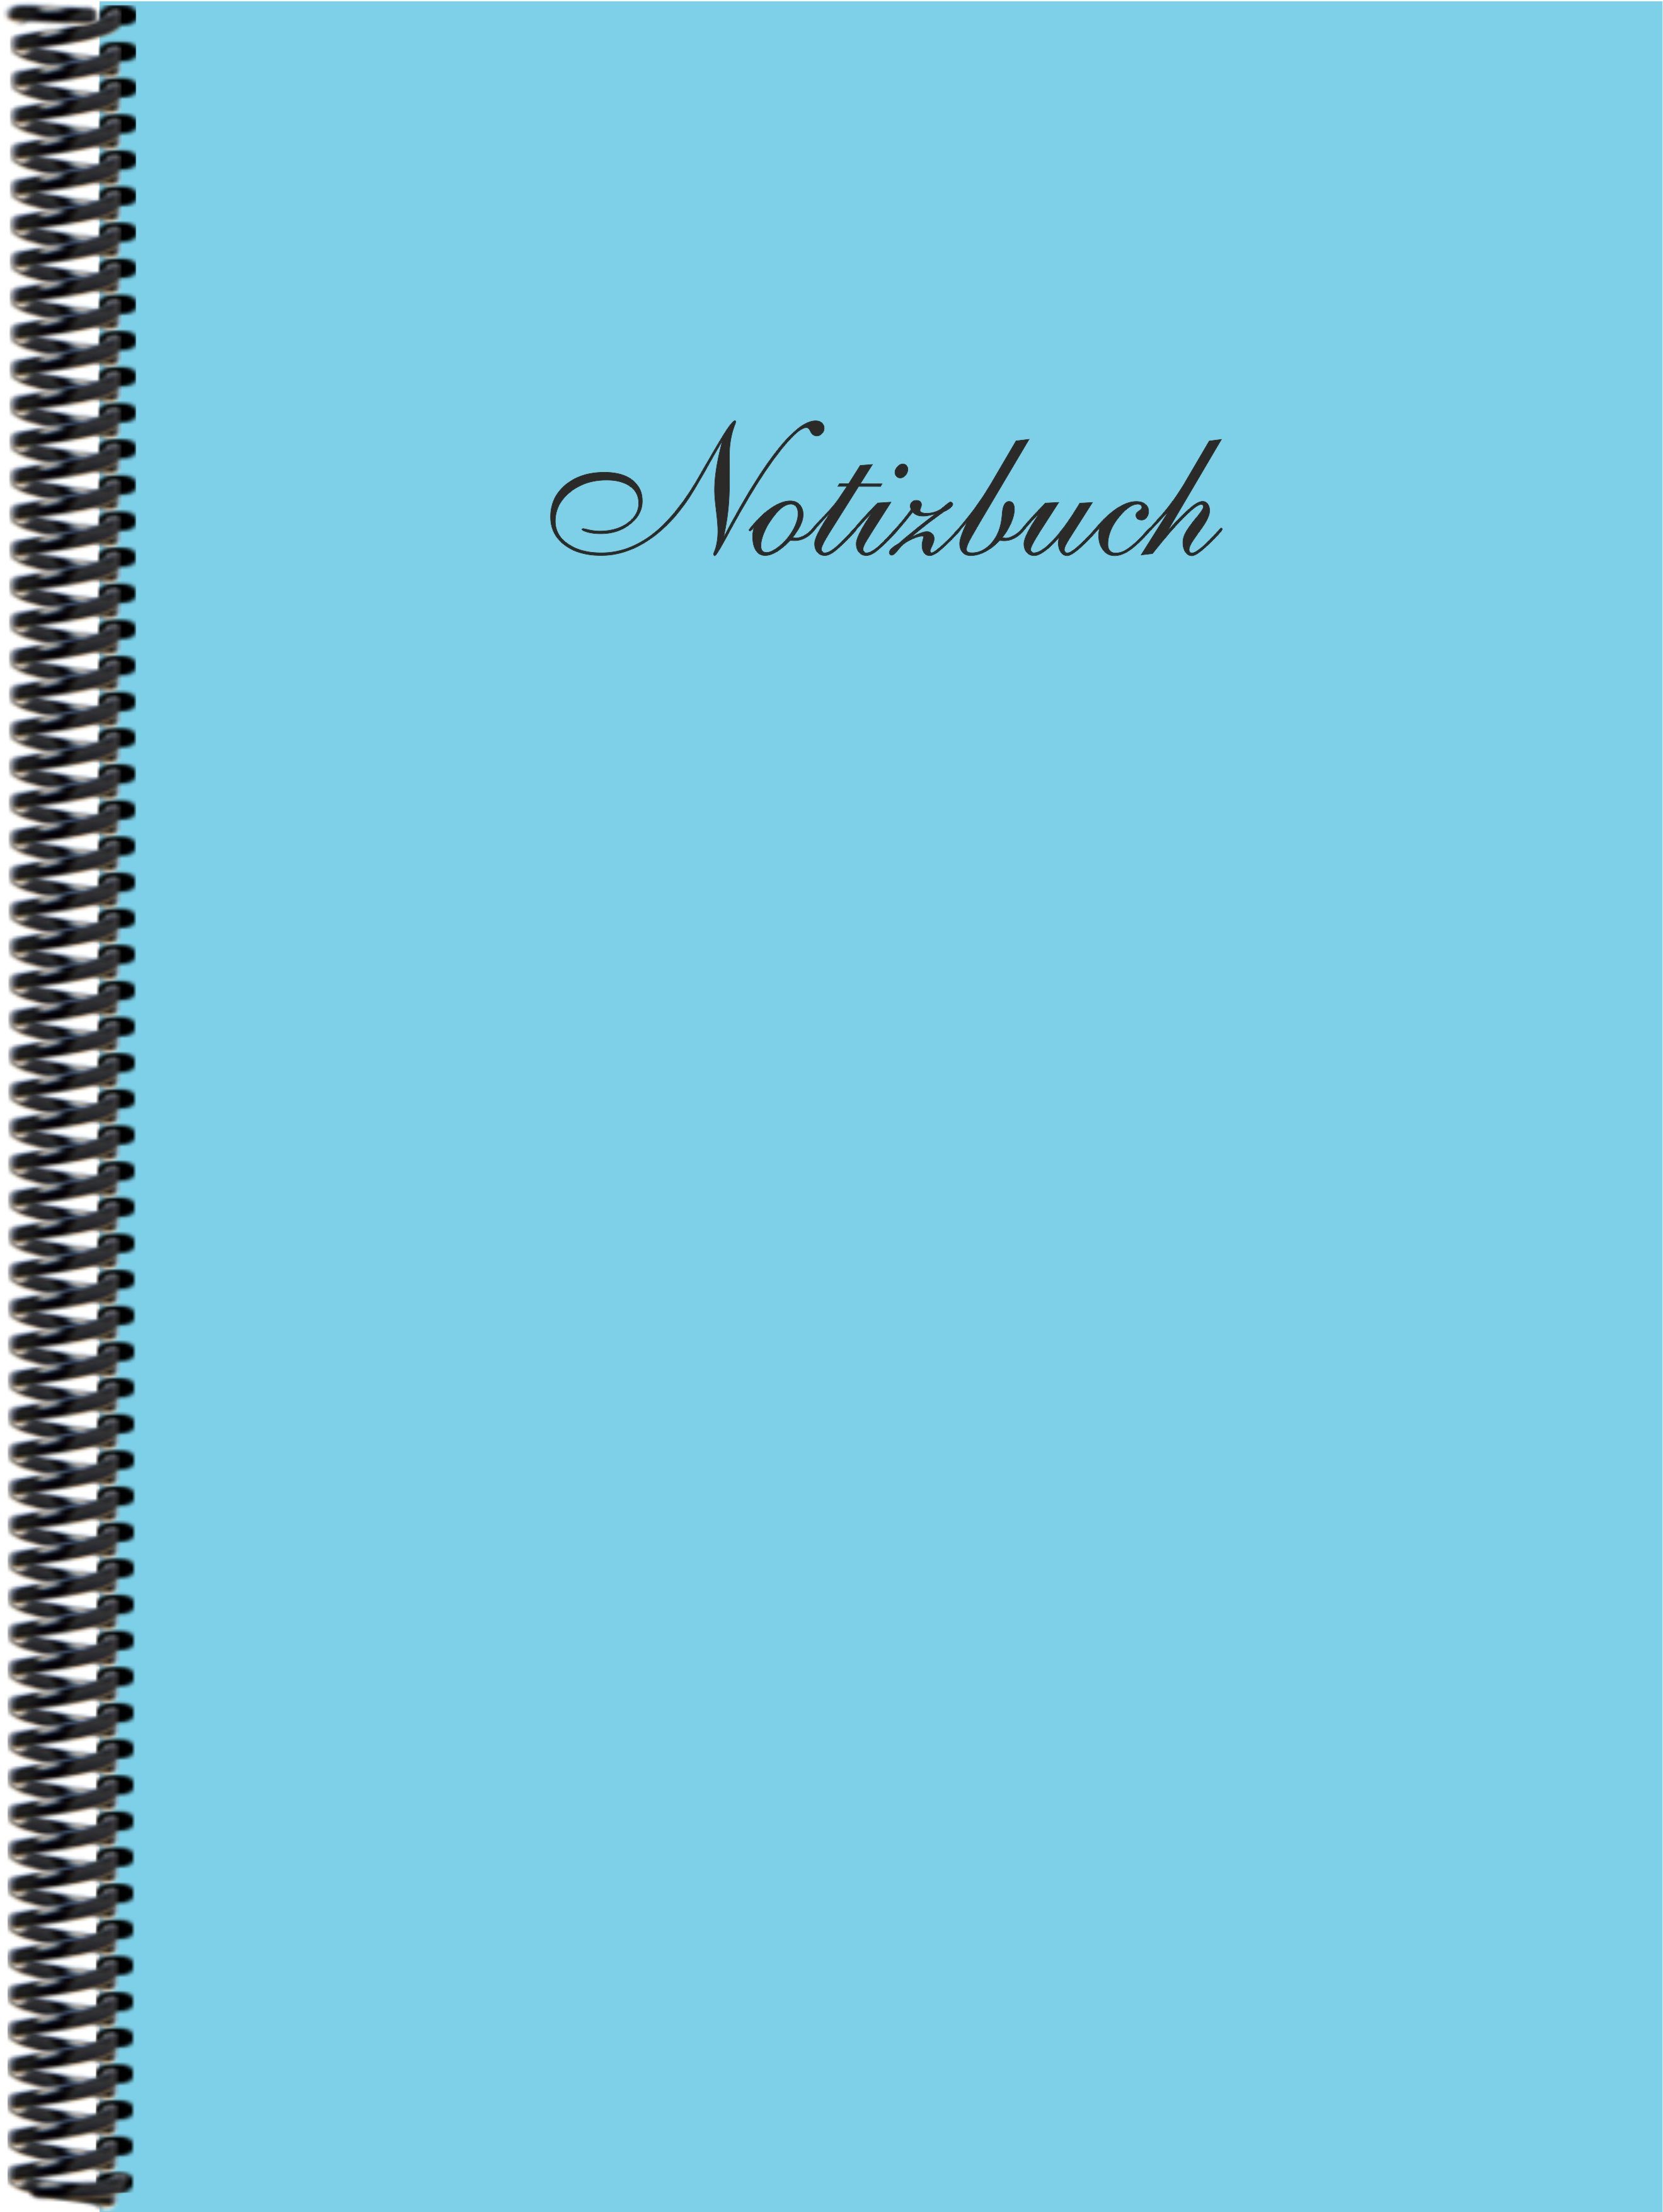 himmelblau Notizbuch in Gmbh Trendfarbe liniert, der Notizbuch E&Z Verlag DINA4